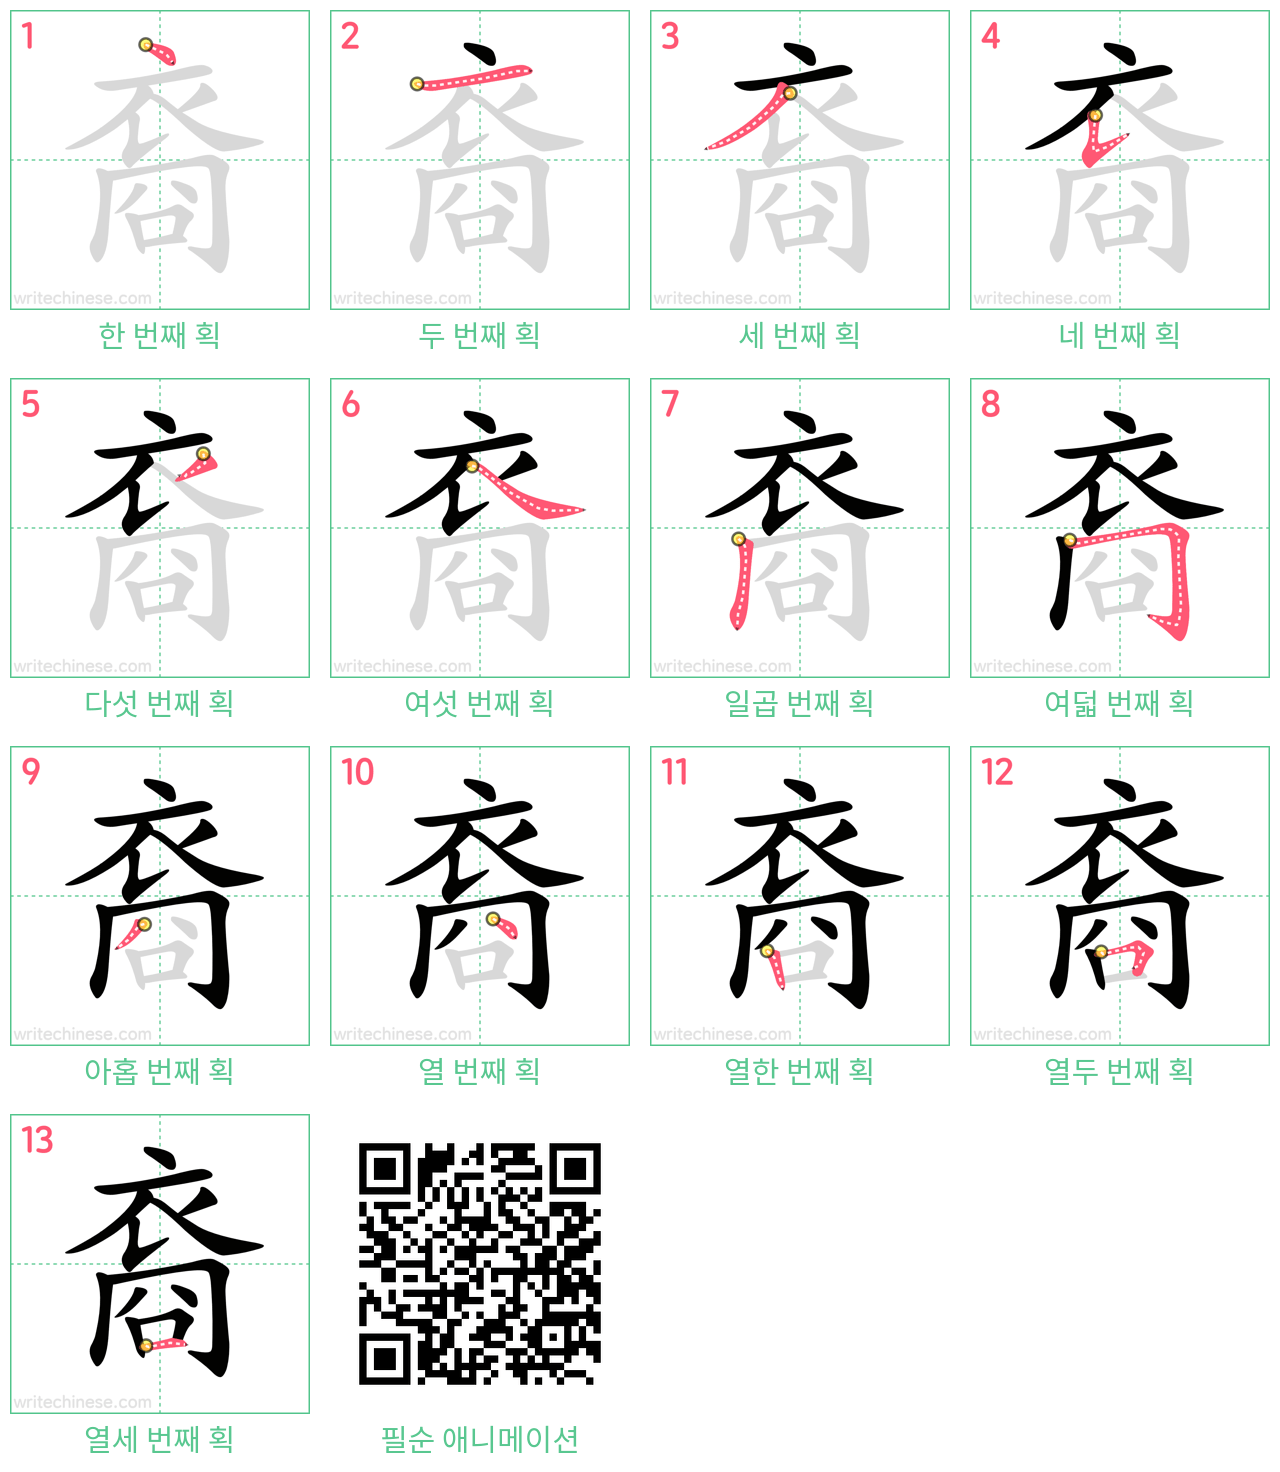 裔 step-by-step stroke order diagrams